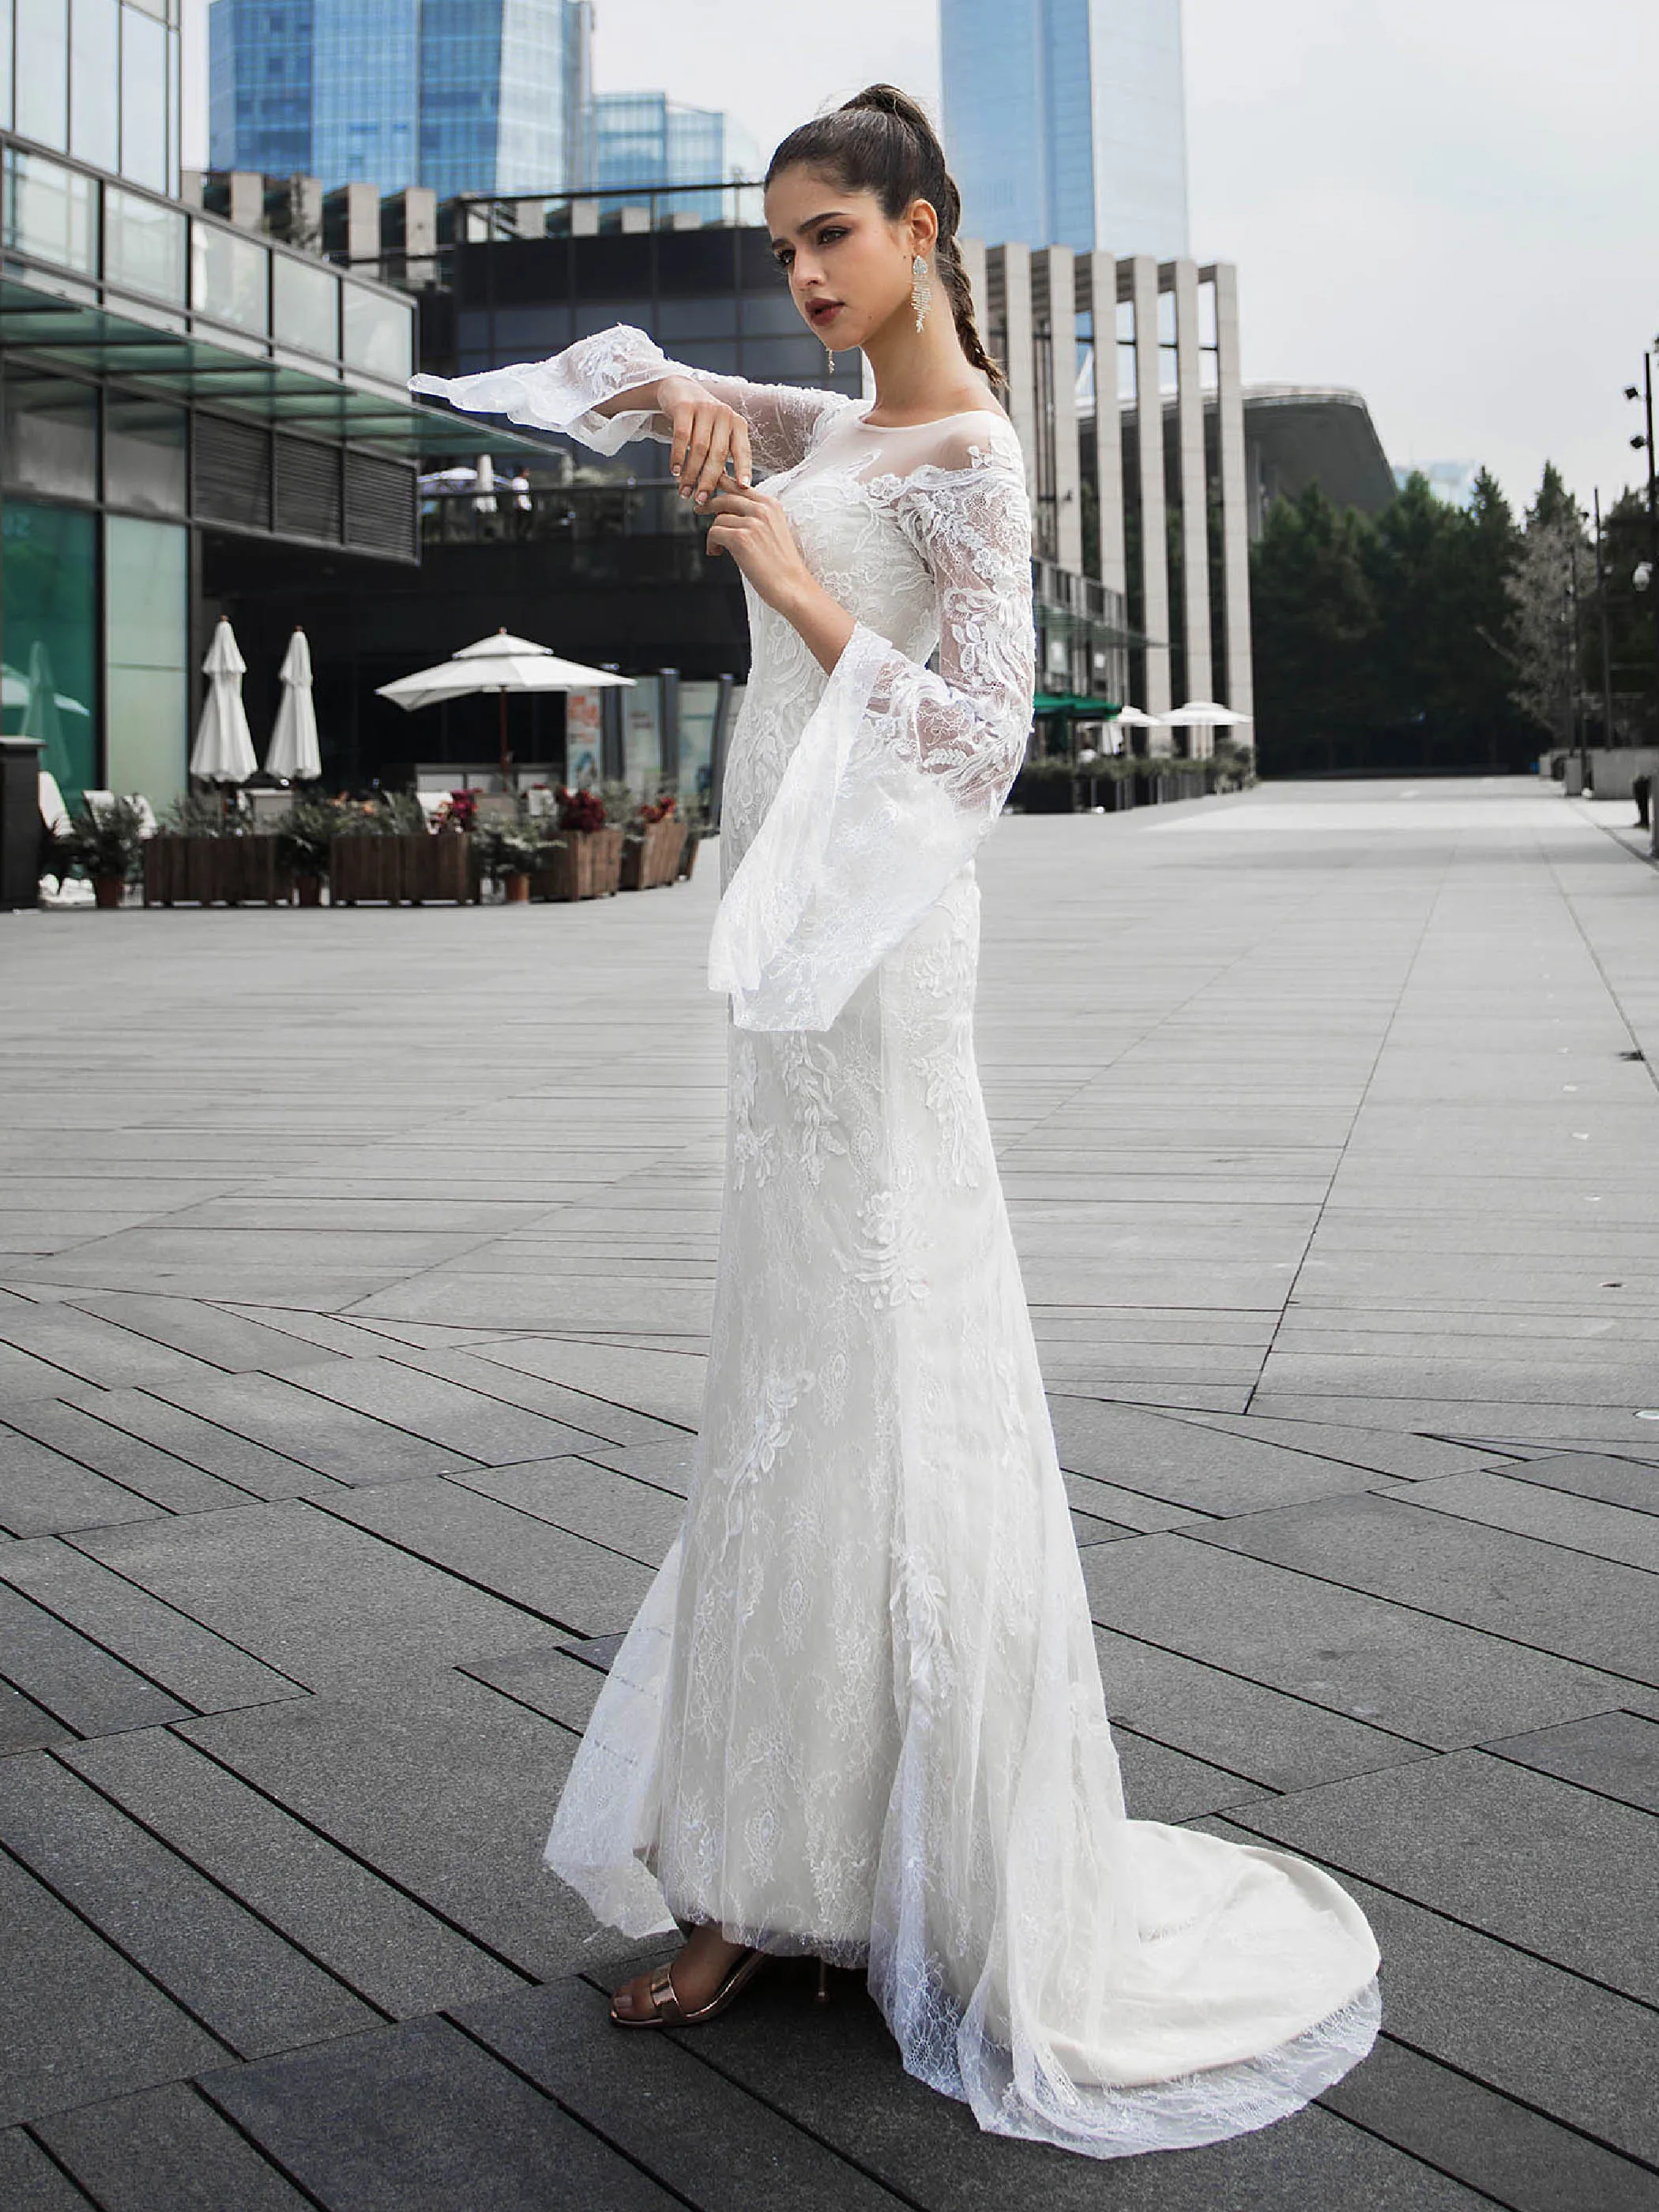 Dressv свадебное платье с овальным вырезом и длинными рукавами с аппликацией, кружевное свадебное платье со шлейфом для улицы и церкви, Элегантное свадебное платье на заказ